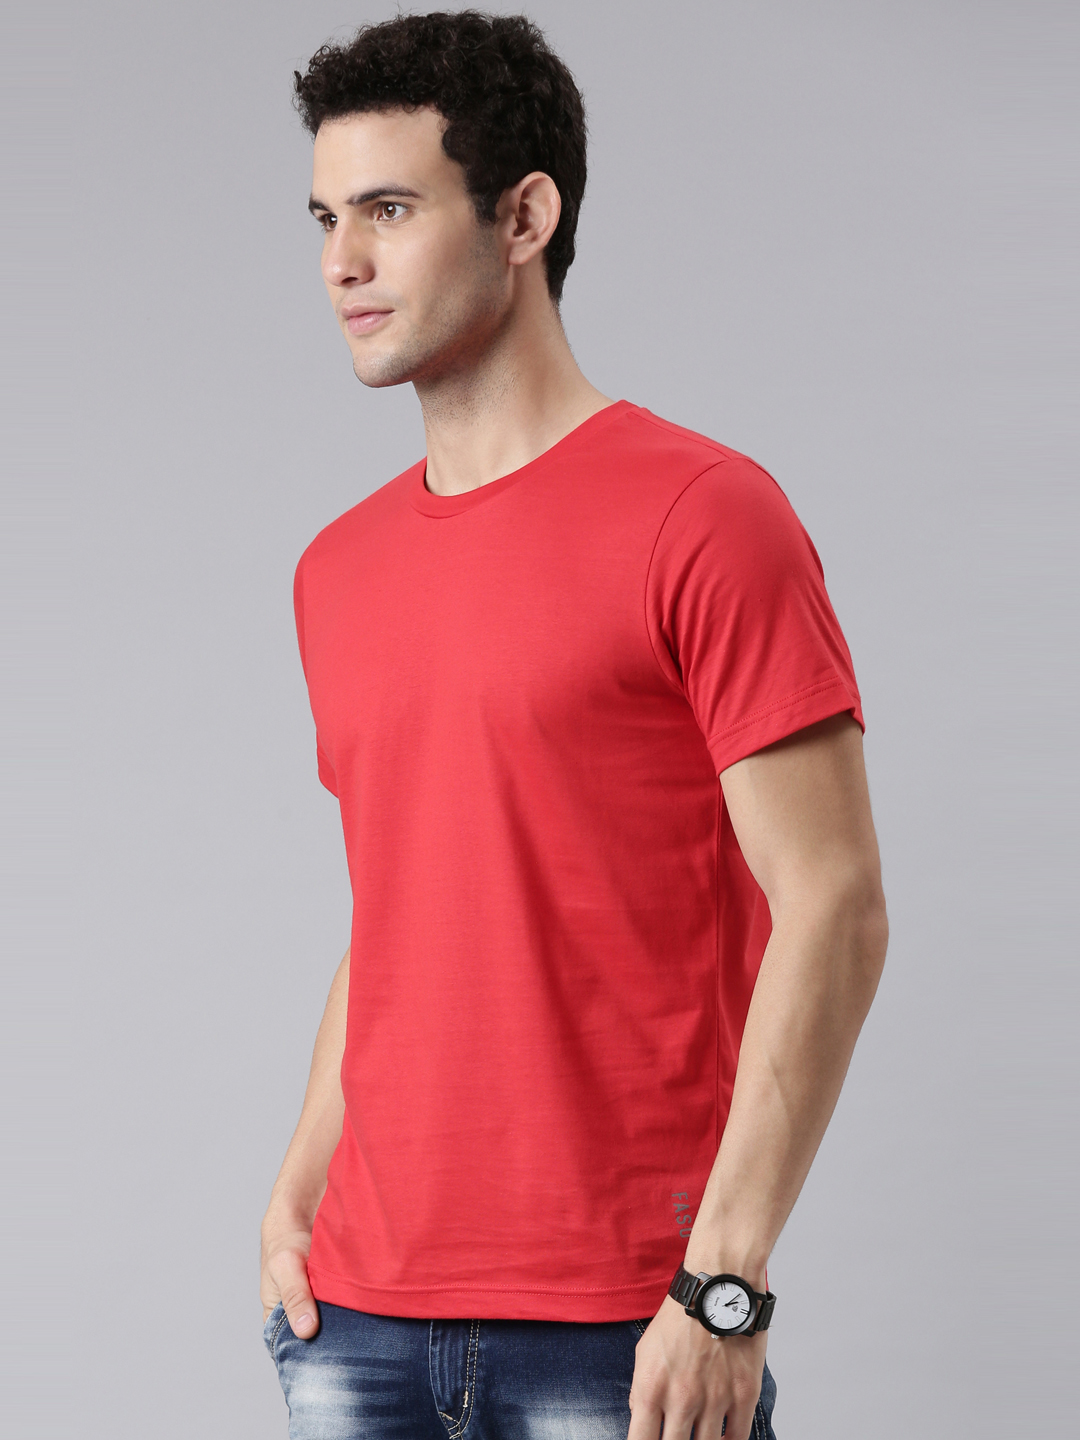 FASO NEW Multicolor Cotton Round Neck T-Shirt- FS4001-SQ